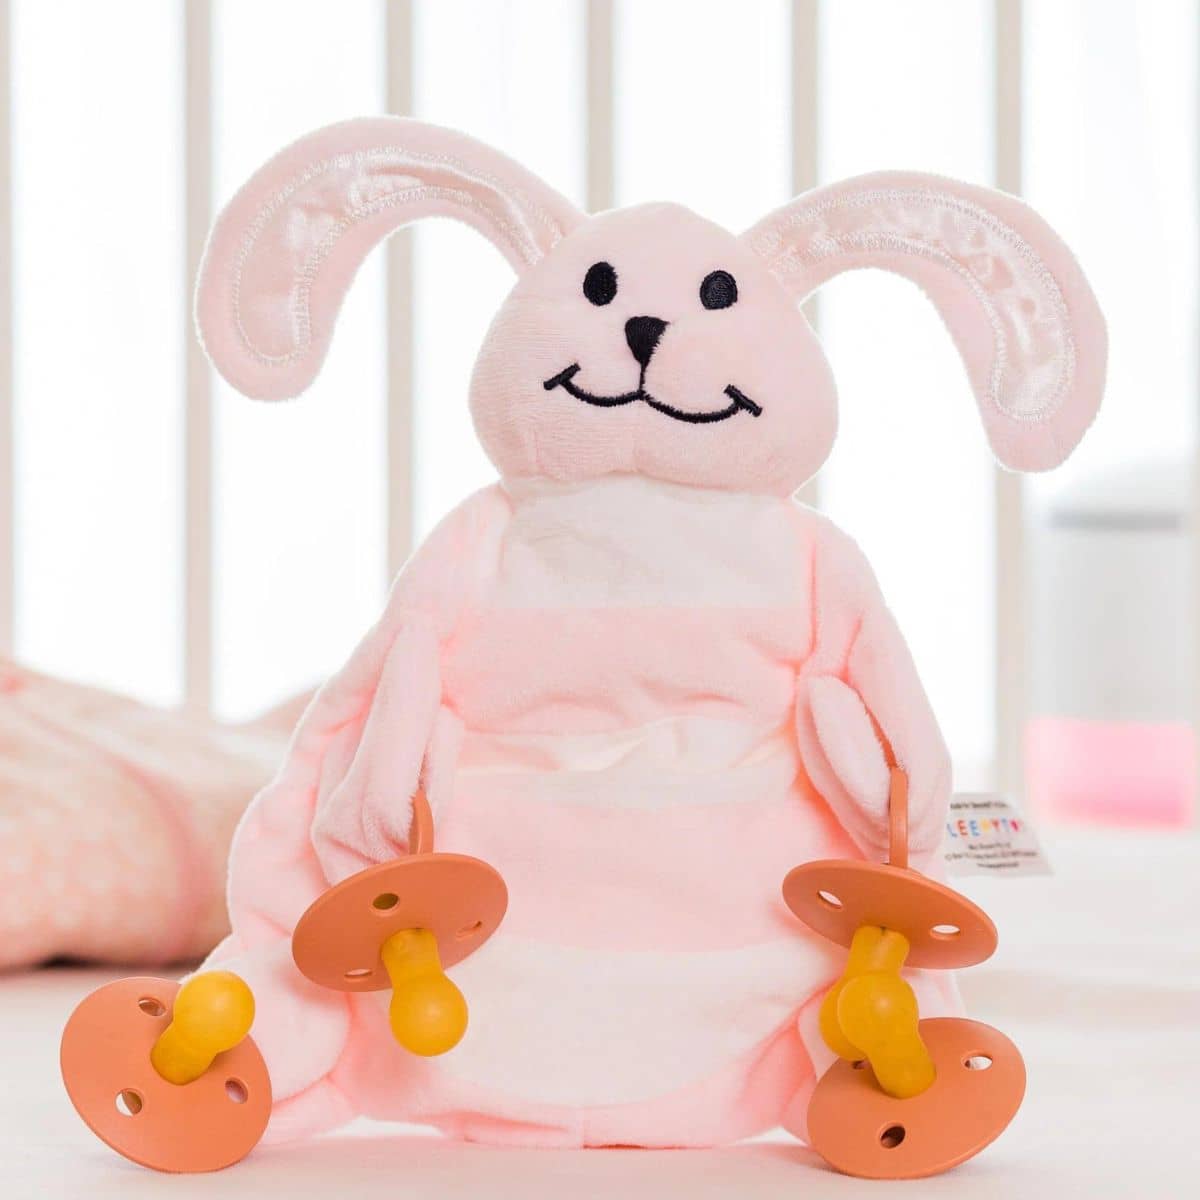 Sleepytot Baby Comforter - Bunny Pink